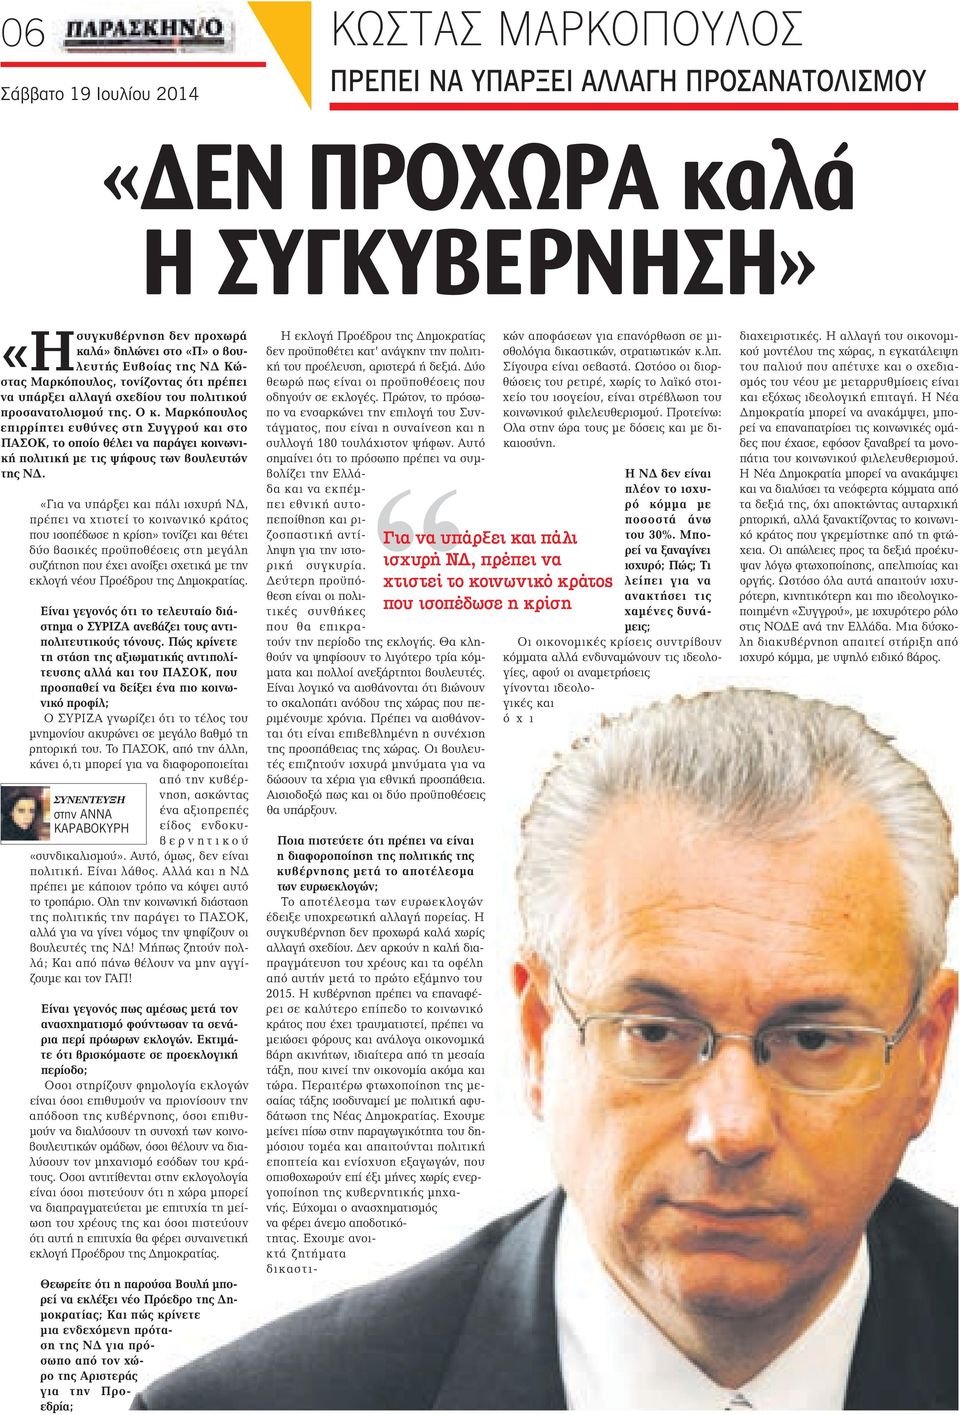 Μαρκόπουλος επιρρίπτει ευθύνες στη Συγγρού και στο ΠΑΣΟΚ, το οποίο θέλει να παράγει κοινωνική πολιτική με τις ψήφους των βουλευτών της ΝΔ.